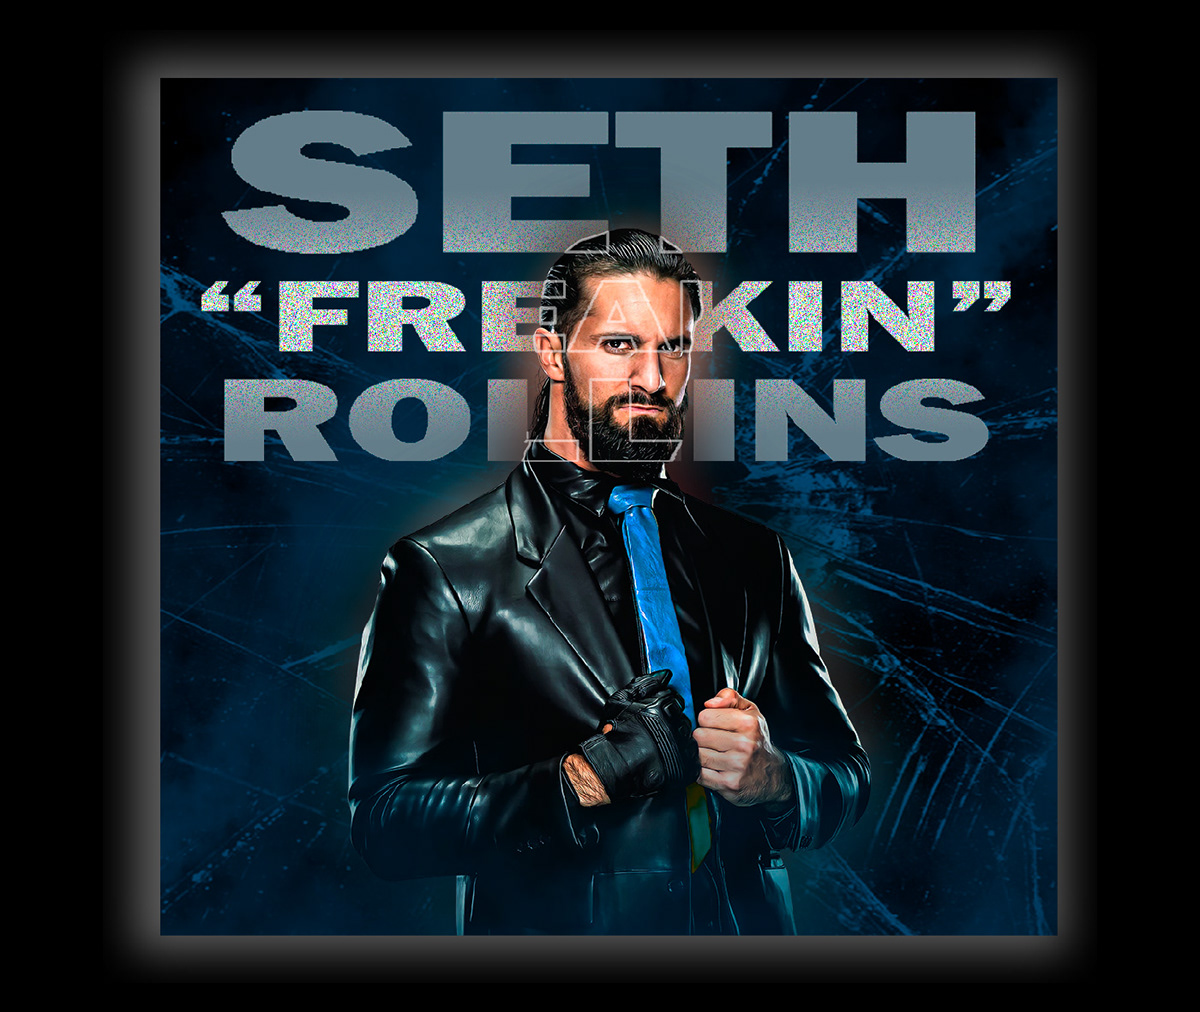 Wrestling WWE AEW graphic design  poster Wrestler lucha libre luchador Edición fotográfica photoshop